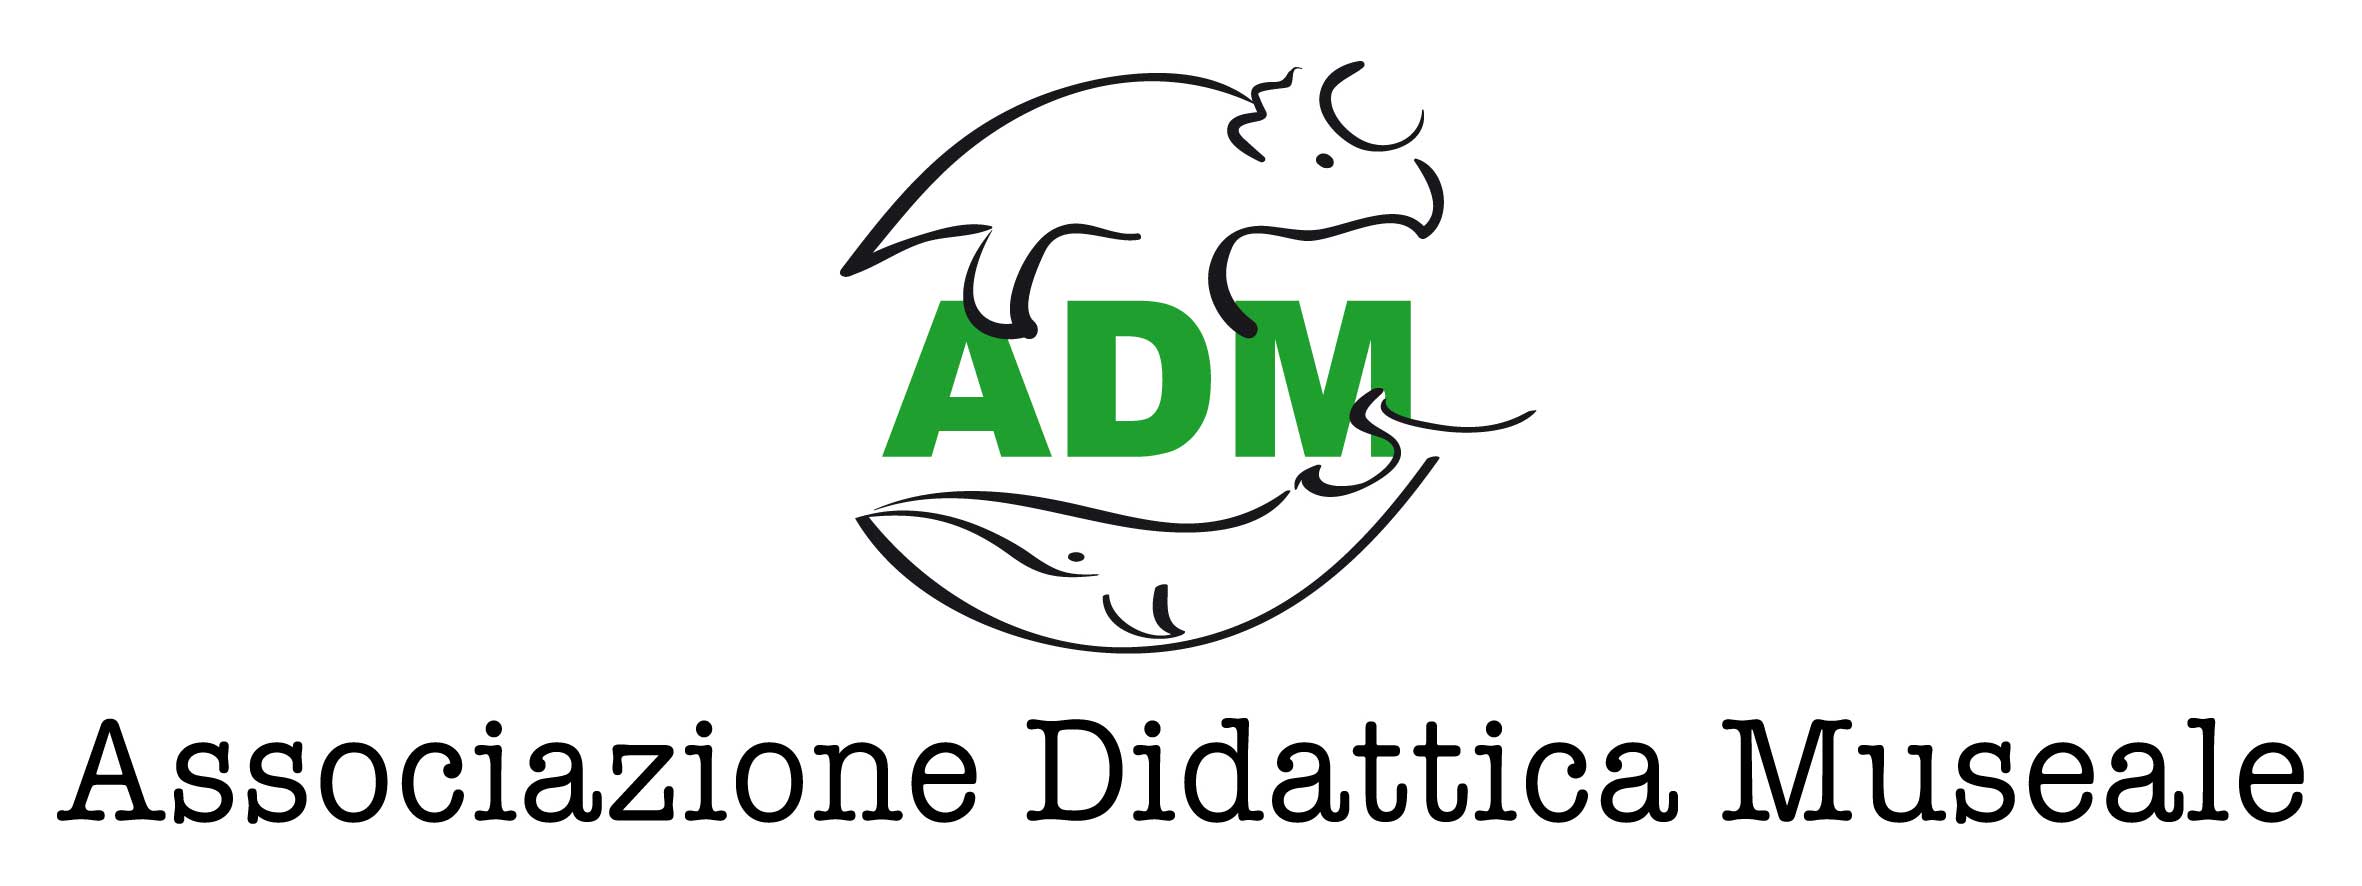 Logo ADM - Associazione Didattica Museale